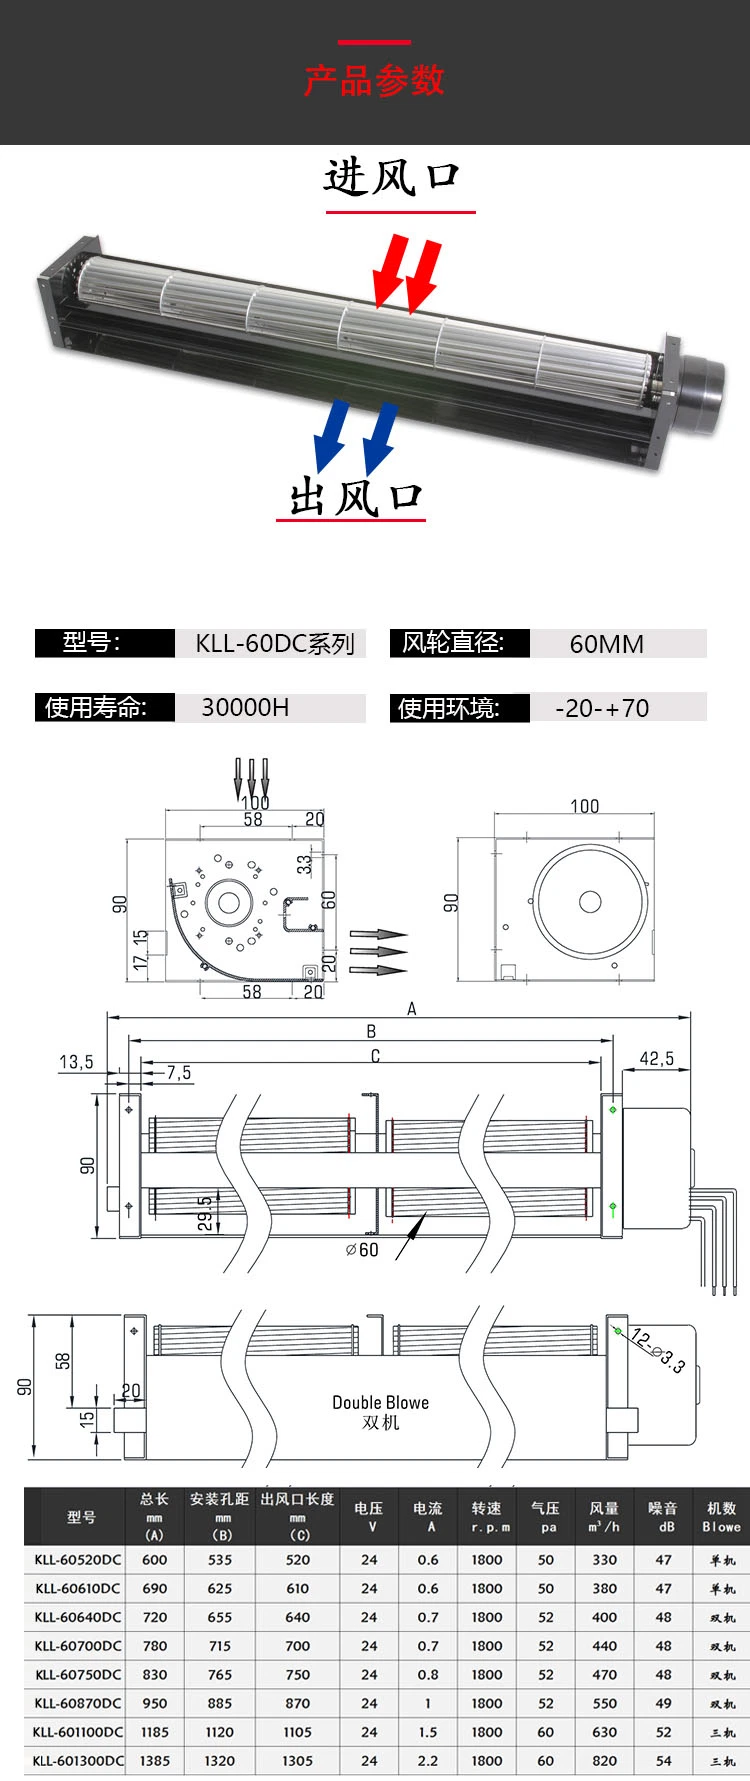 KLL-60DC DC12/24V flujo transversal refrigeración centrífuga Ventilador industrial ventilación DC Ventilador